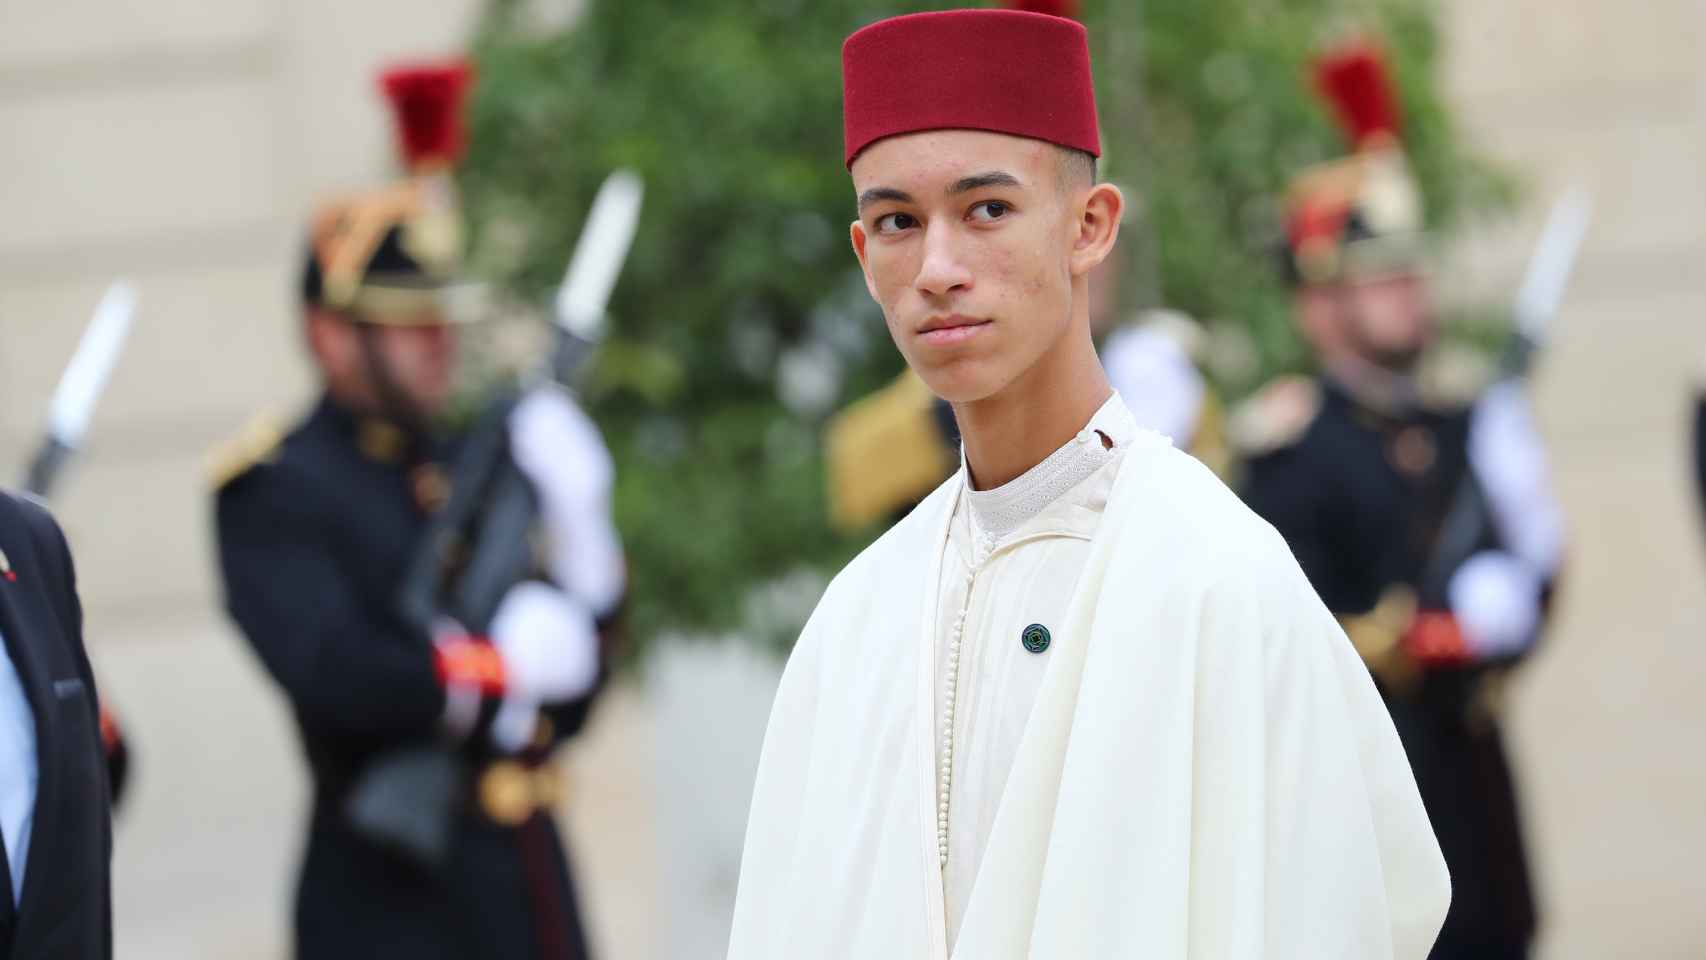 Moulay Hassan de Marruecos en el funeral de Jacques Chirac en septiembre de 2019.